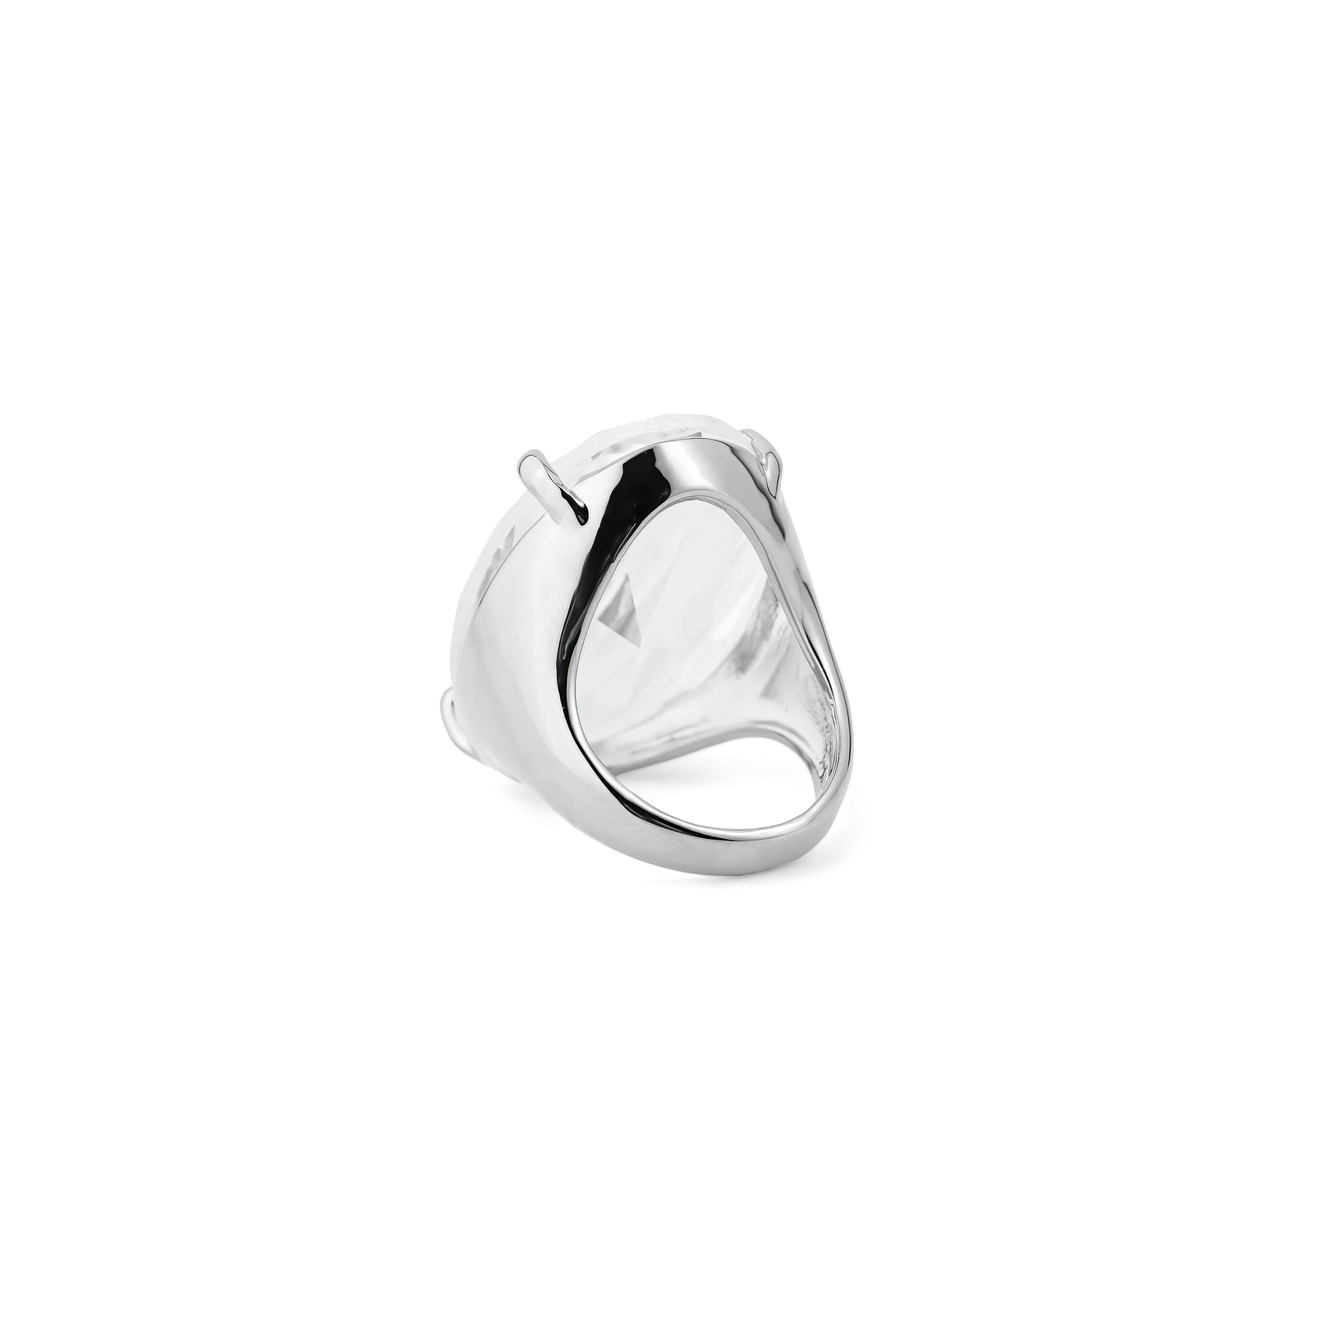 Herald Percy Серебристое кольцо с овальным кристаллом herald percy золотистая цепочка с подвеской сердцем с кристаллом